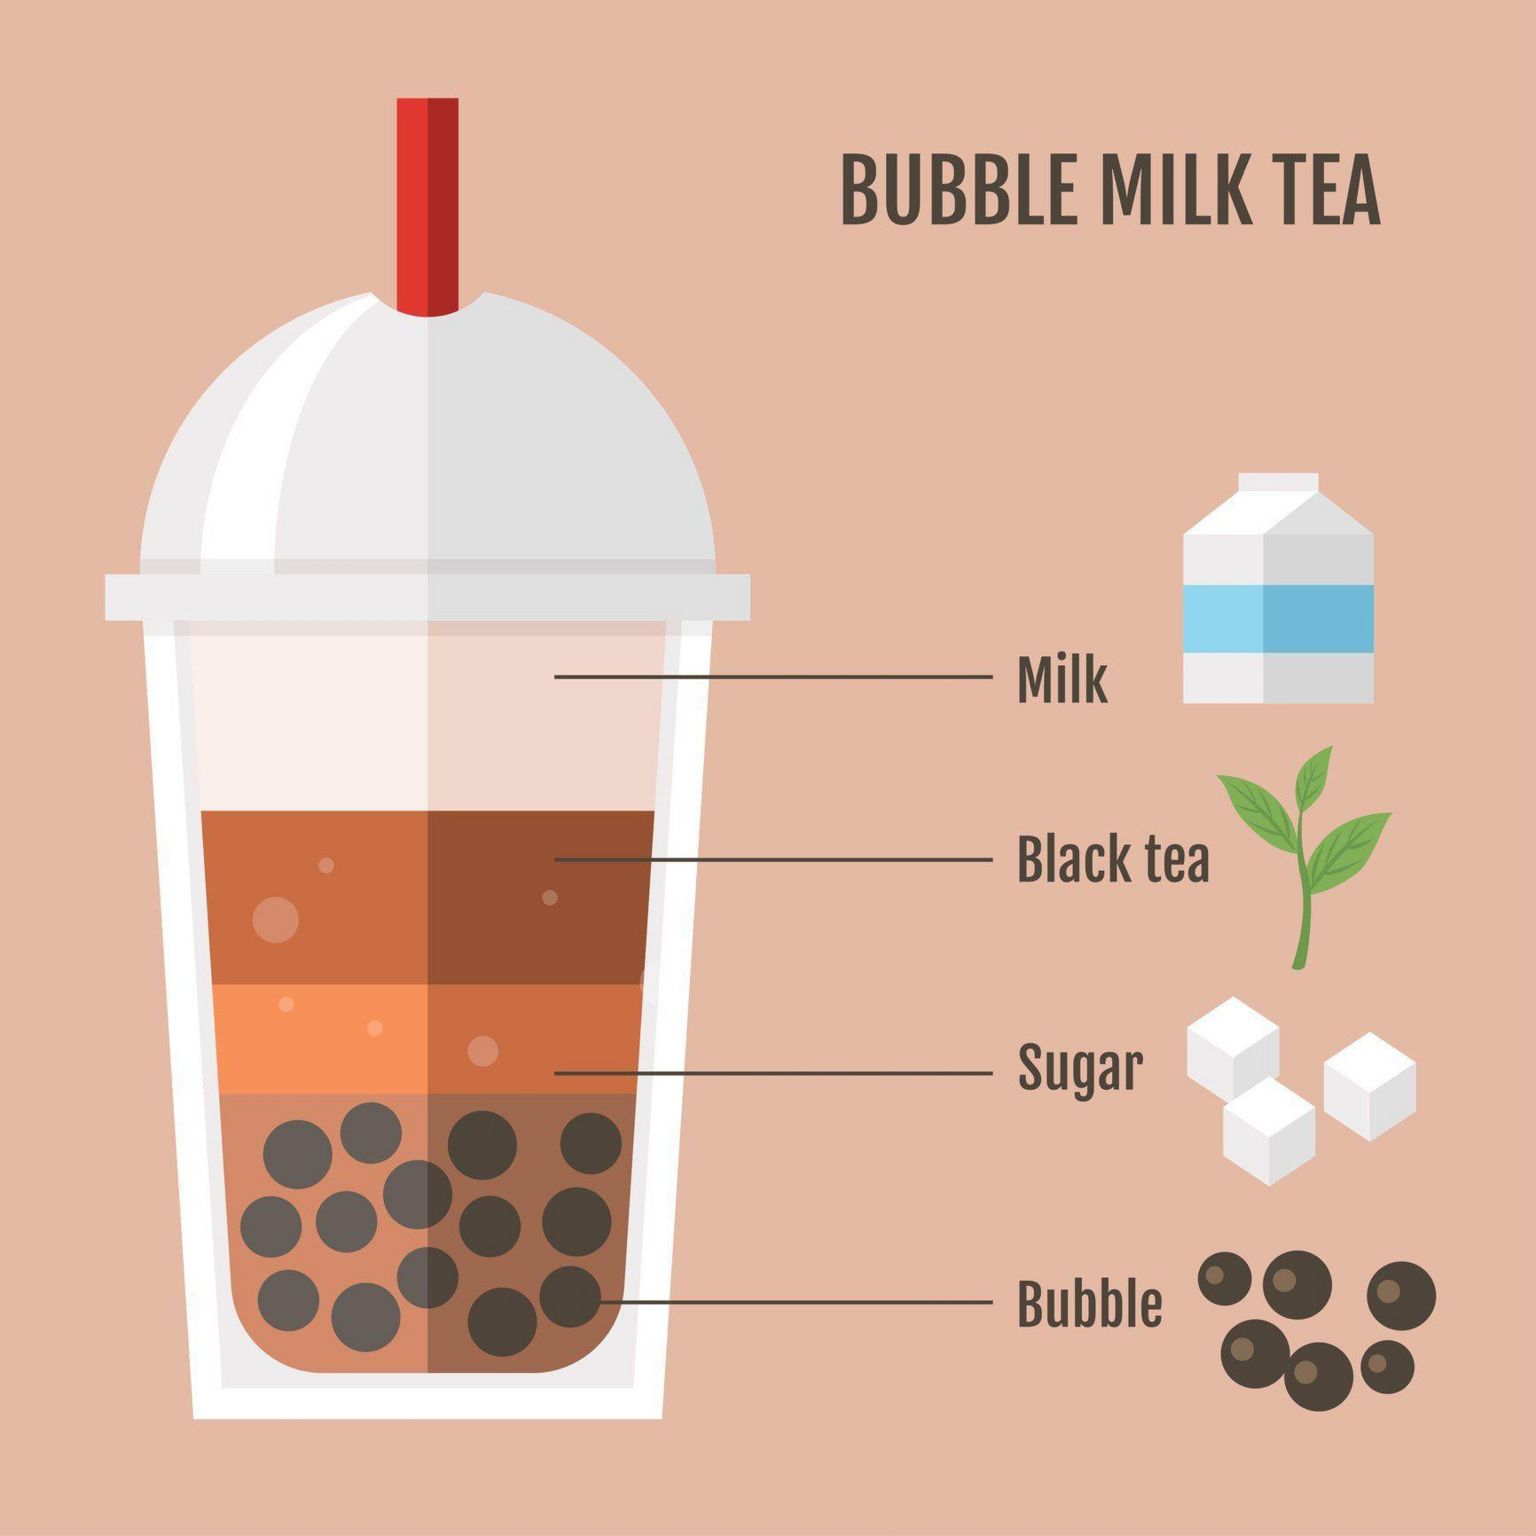 Bubble tea ingredients explained.